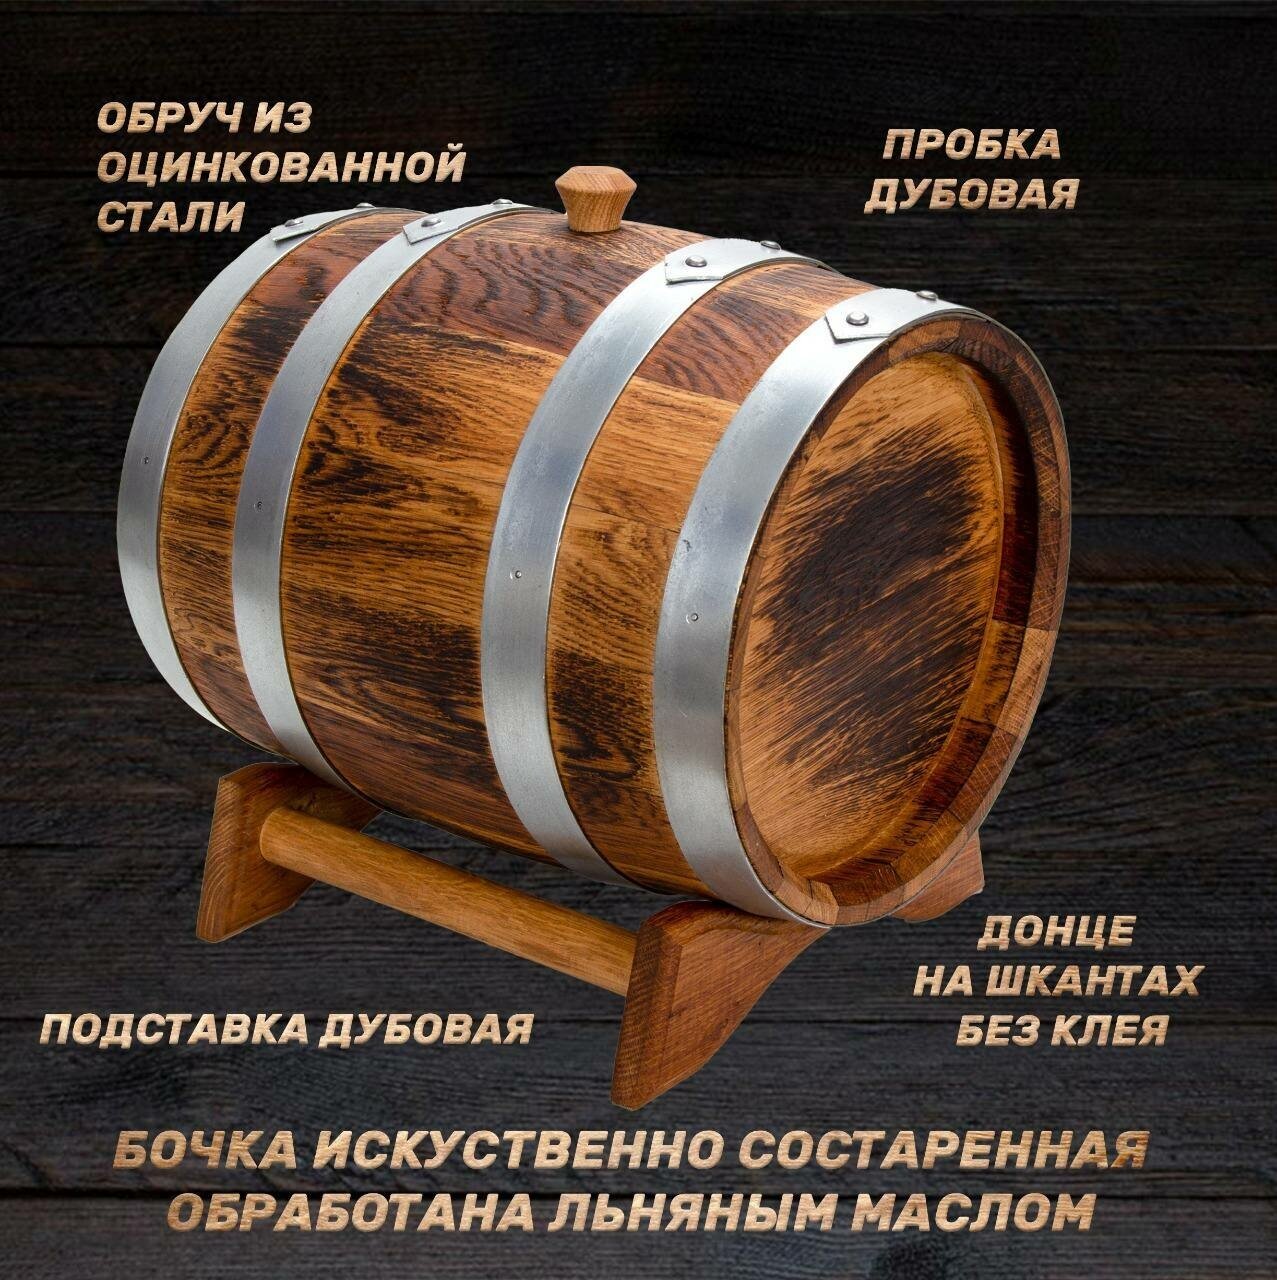 Дубовая бочка 15 литров для алкоголя - "Выдержка" без краника! Русский Бондарь